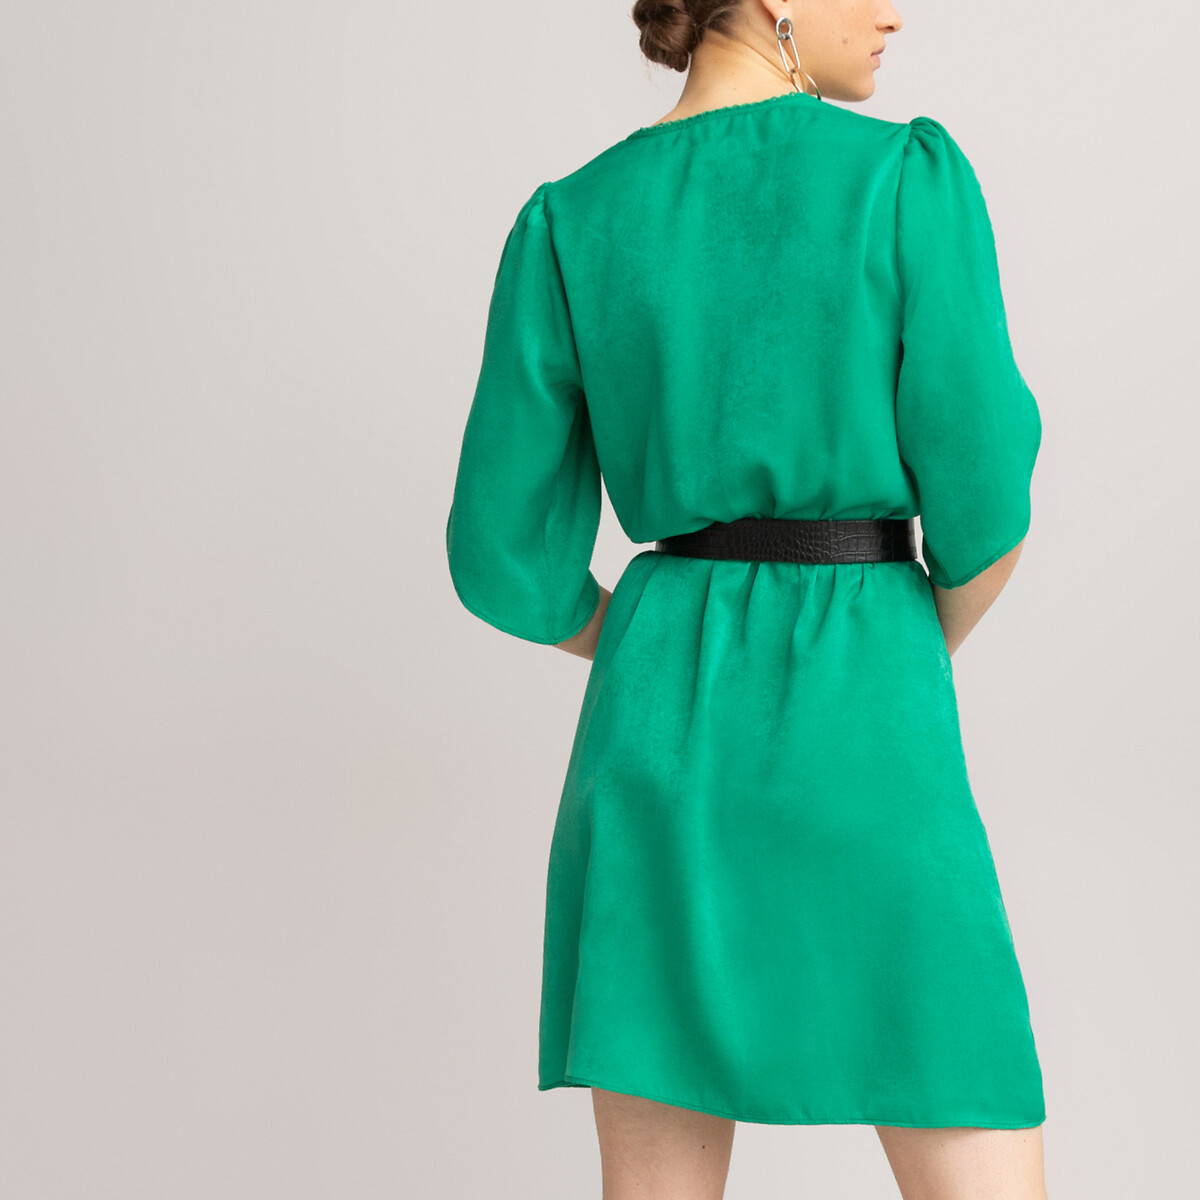 Платье LaRedoute Короткое с запахом короткие рукава 36 (FR) - 42 (RUS) зеленый, размер 36 (FR) - 42 (RUS) Короткое с запахом короткие рукава 36 (FR) - 42 (RUS) зеленый - фото 4